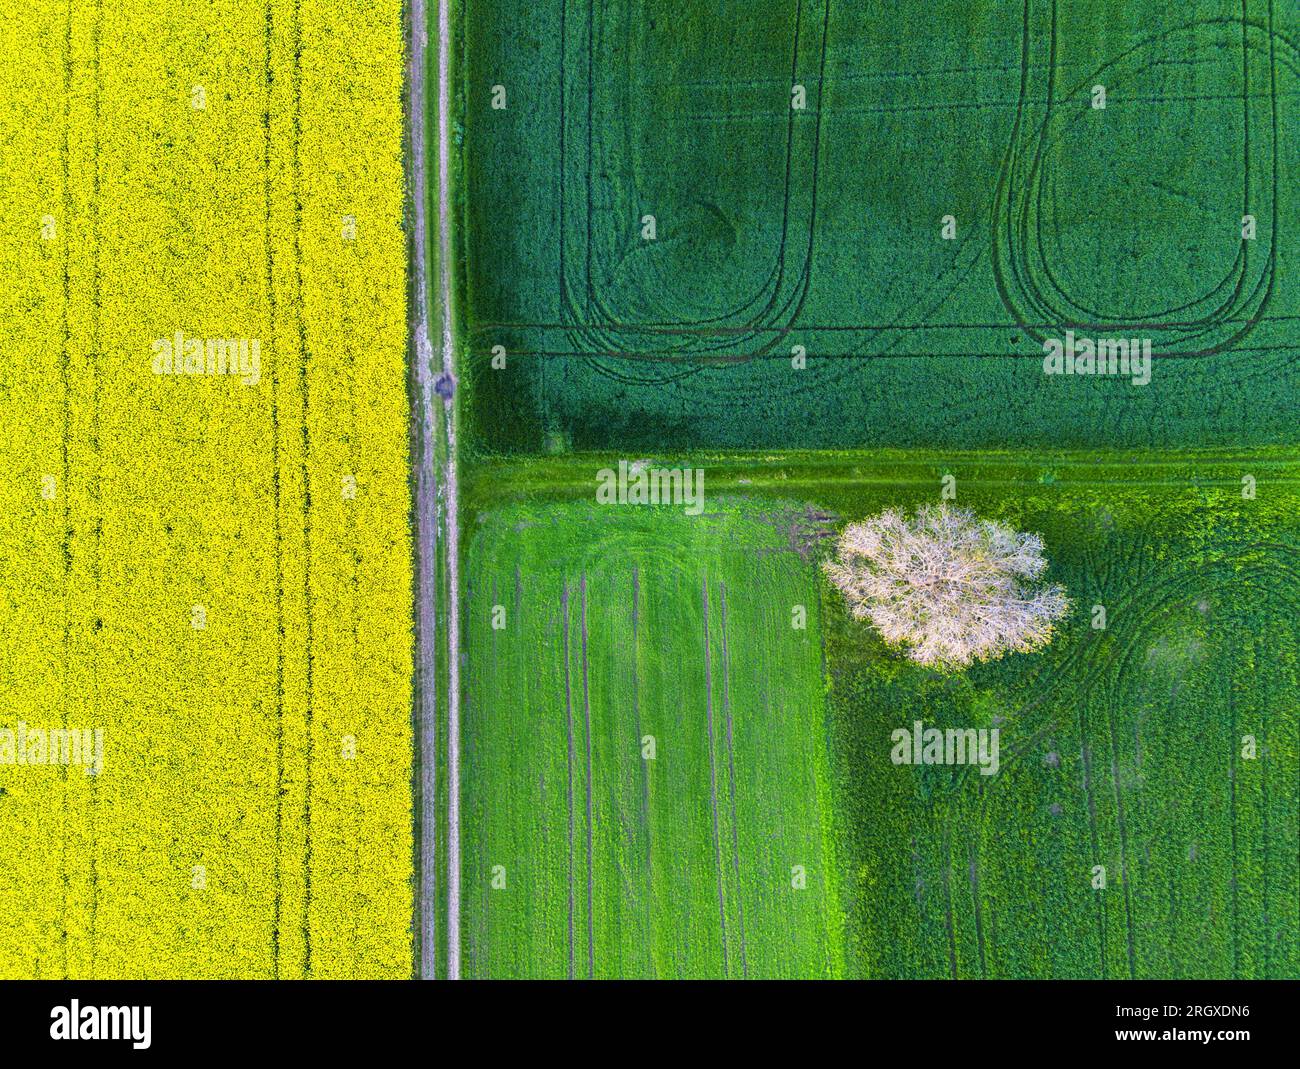 Drone aérien vue de dessus des champs de colza et de blé avec des lignes de chenilles de tracteur sur la journée ensoleillée de printemps ou d'été. Fond de nature, paysage photogra Banque D'Images